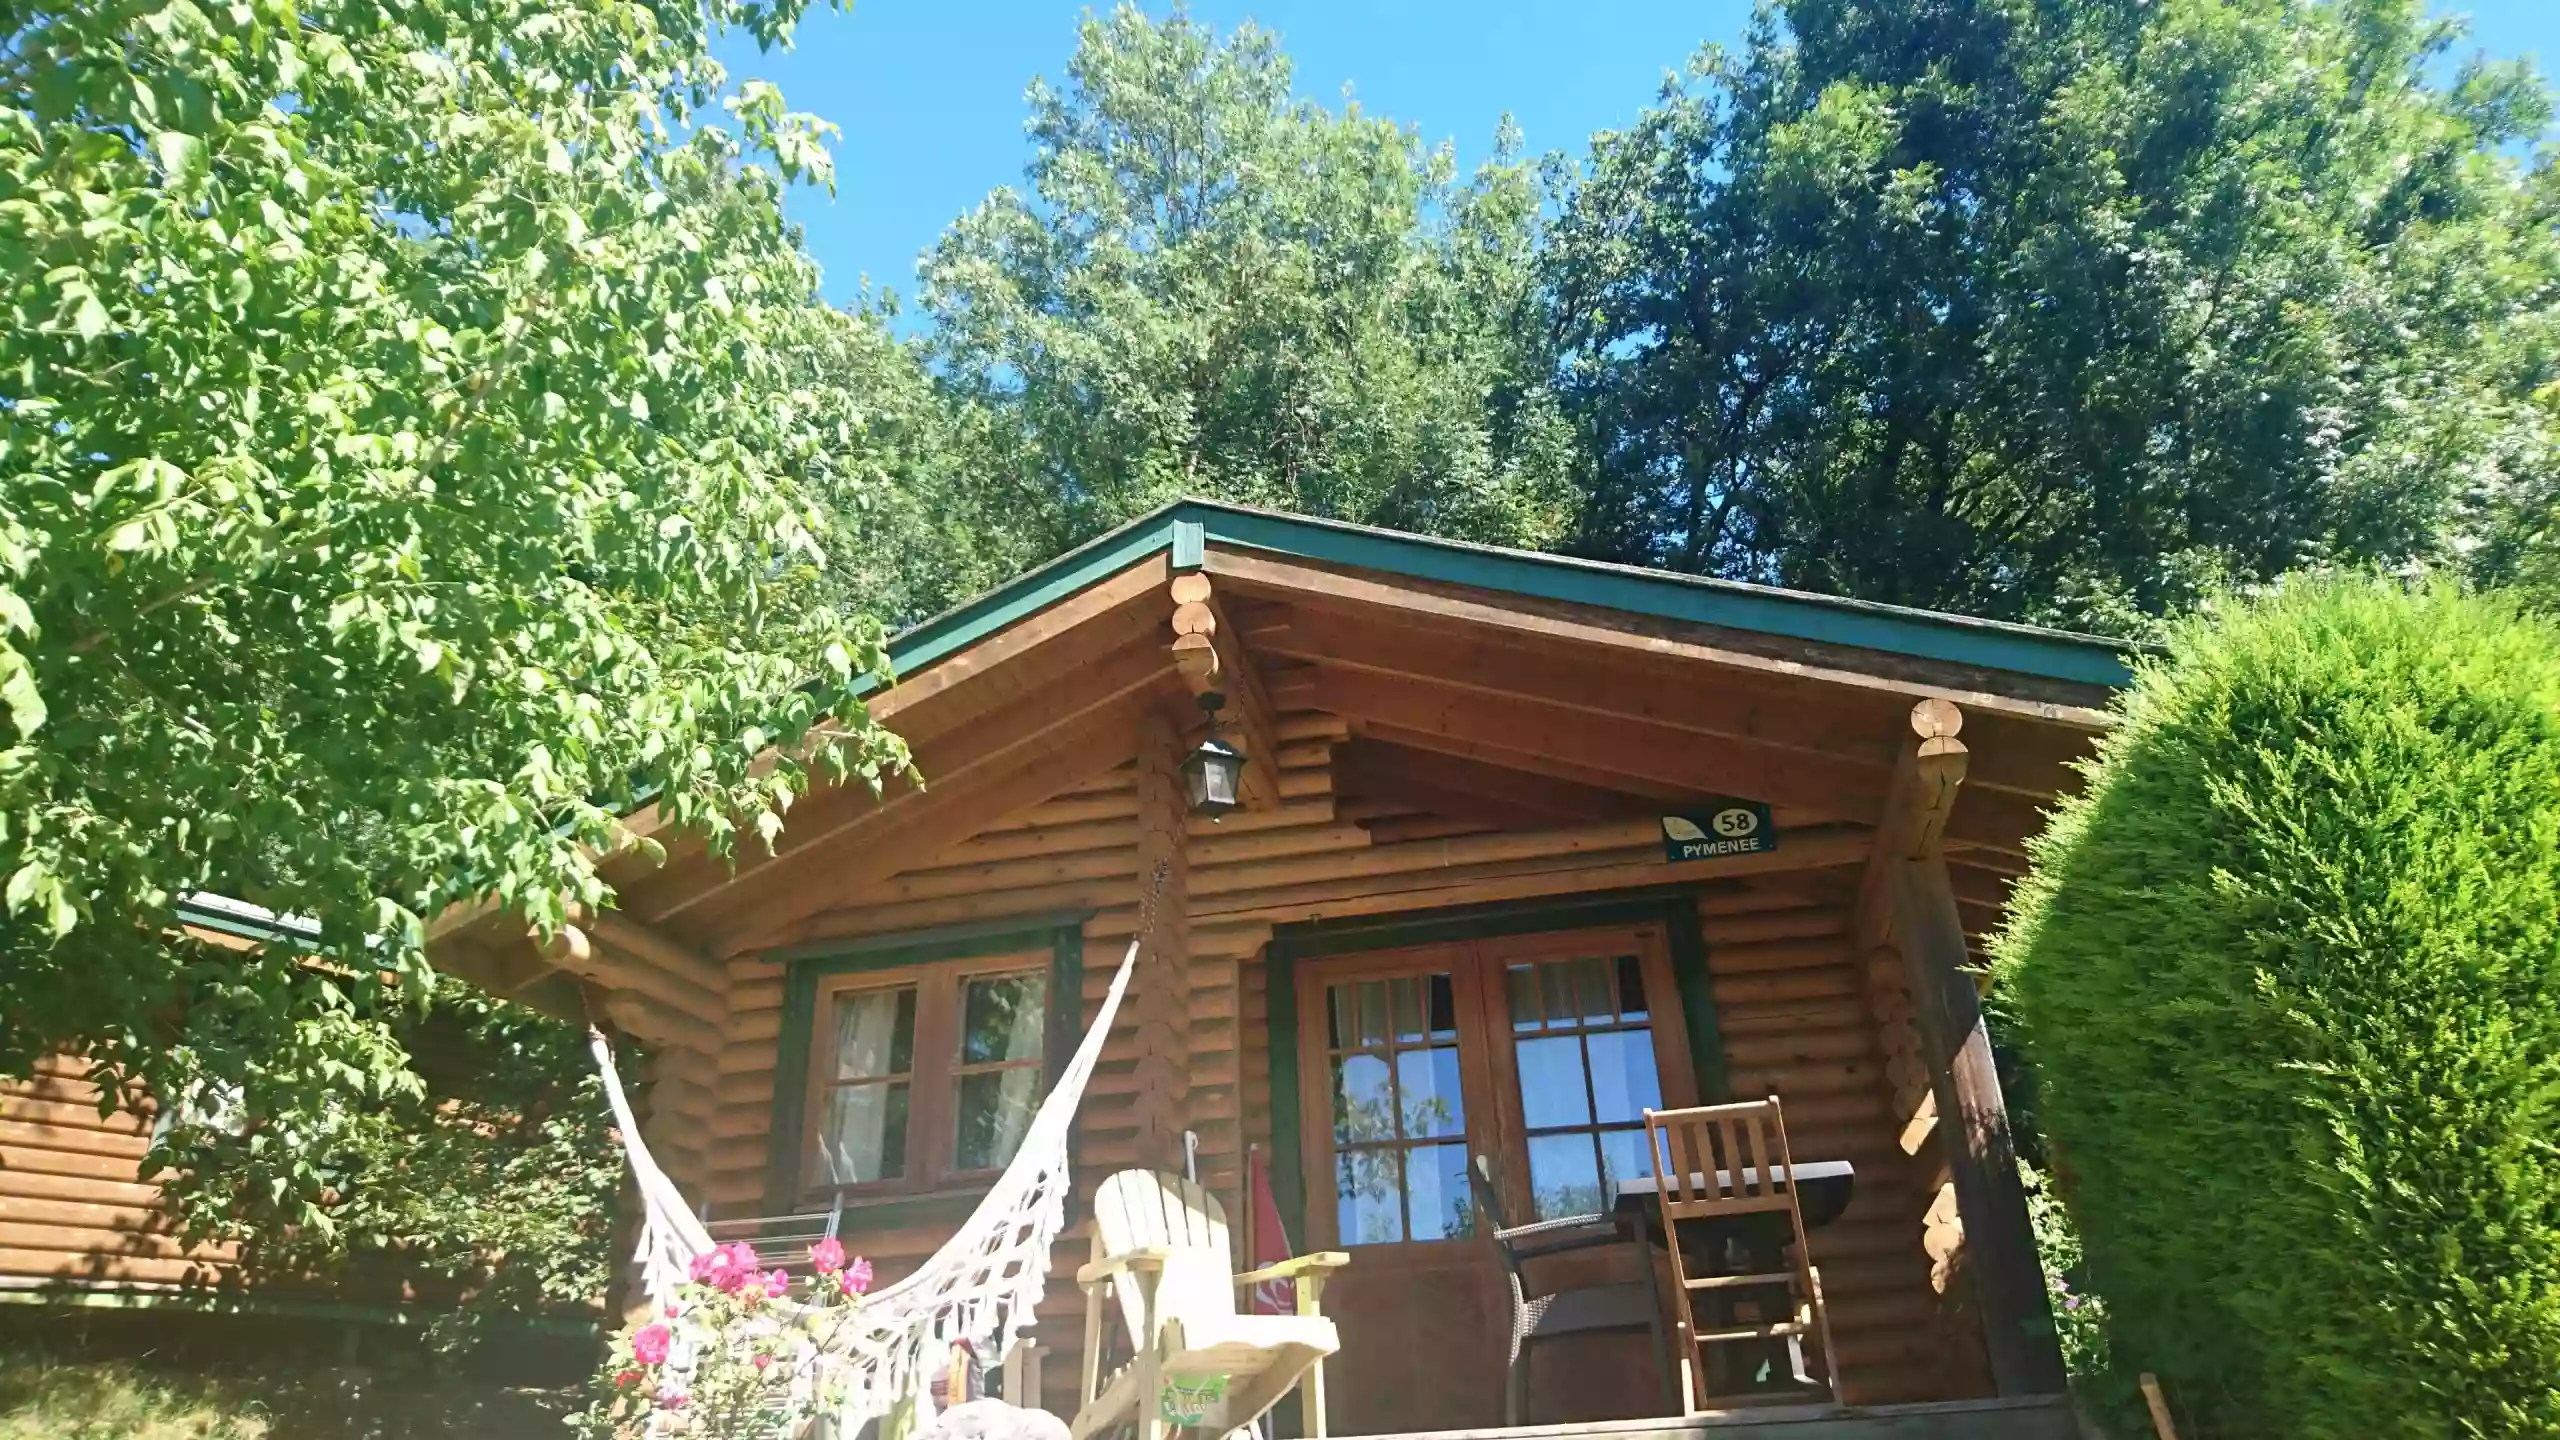 Camping écovillage Soleil du Pibeste - Hautes-Pyrénées